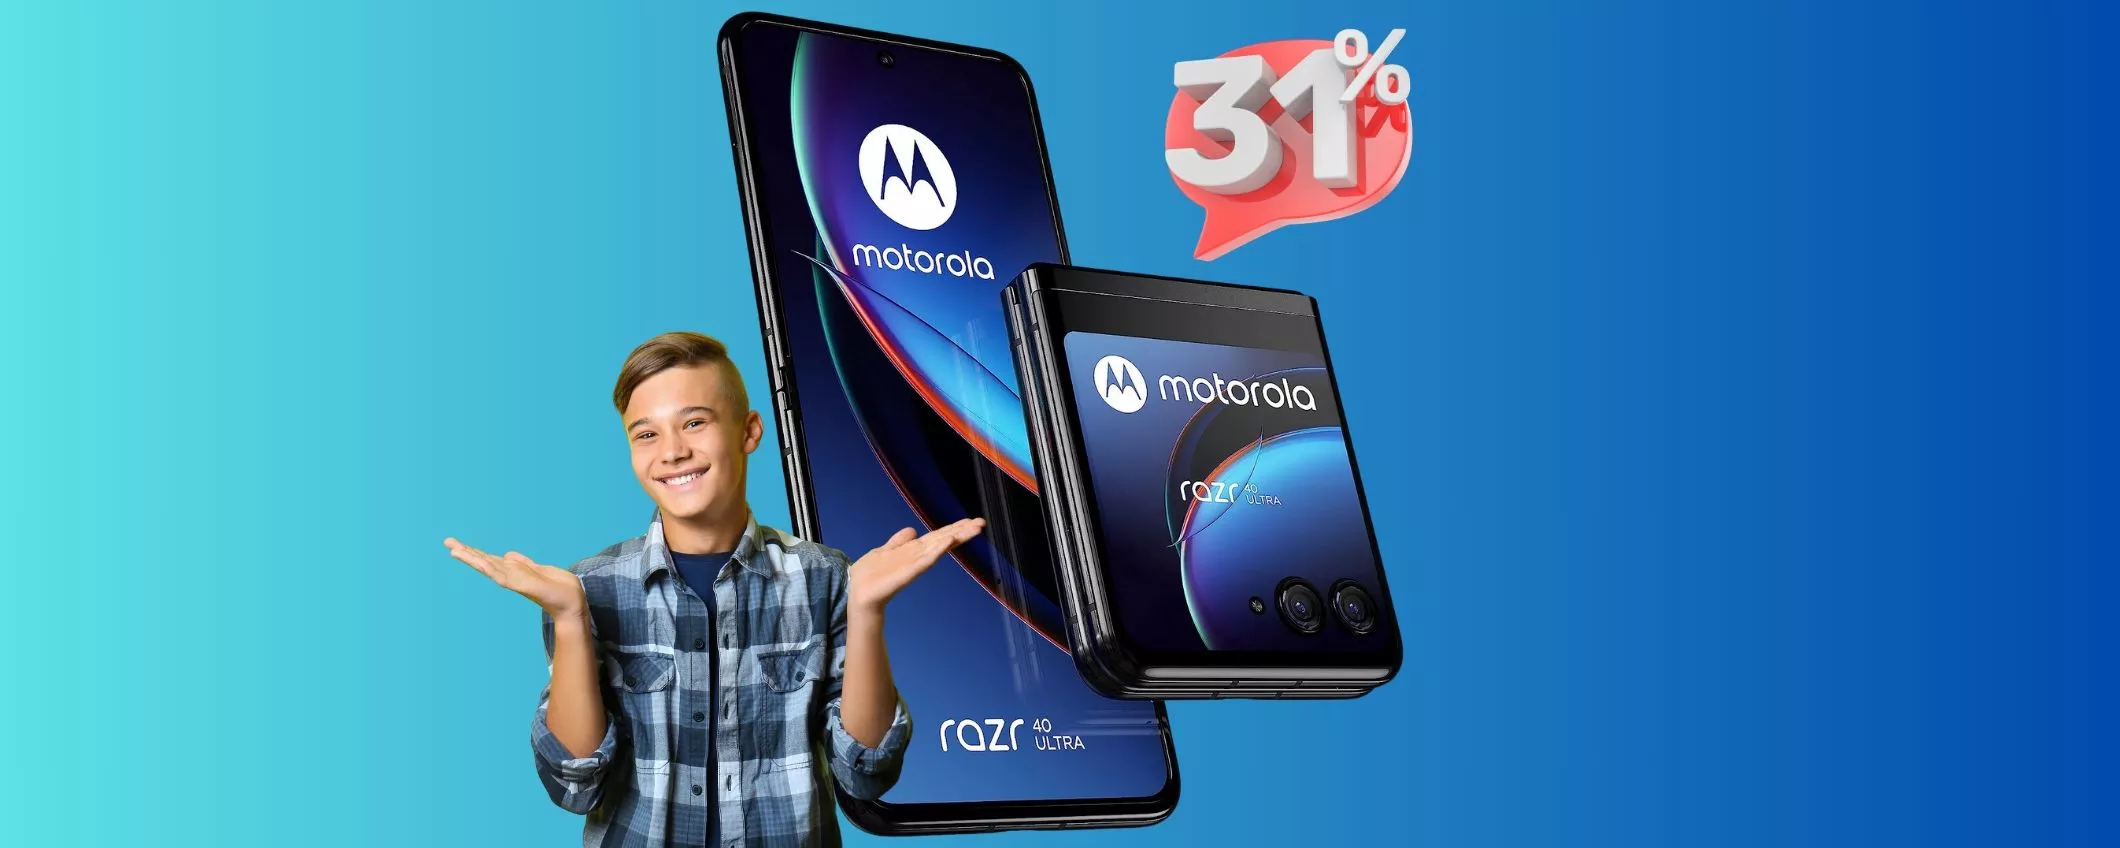 Motorola RAZR 40 Ultra: SCONTATO al 31%!